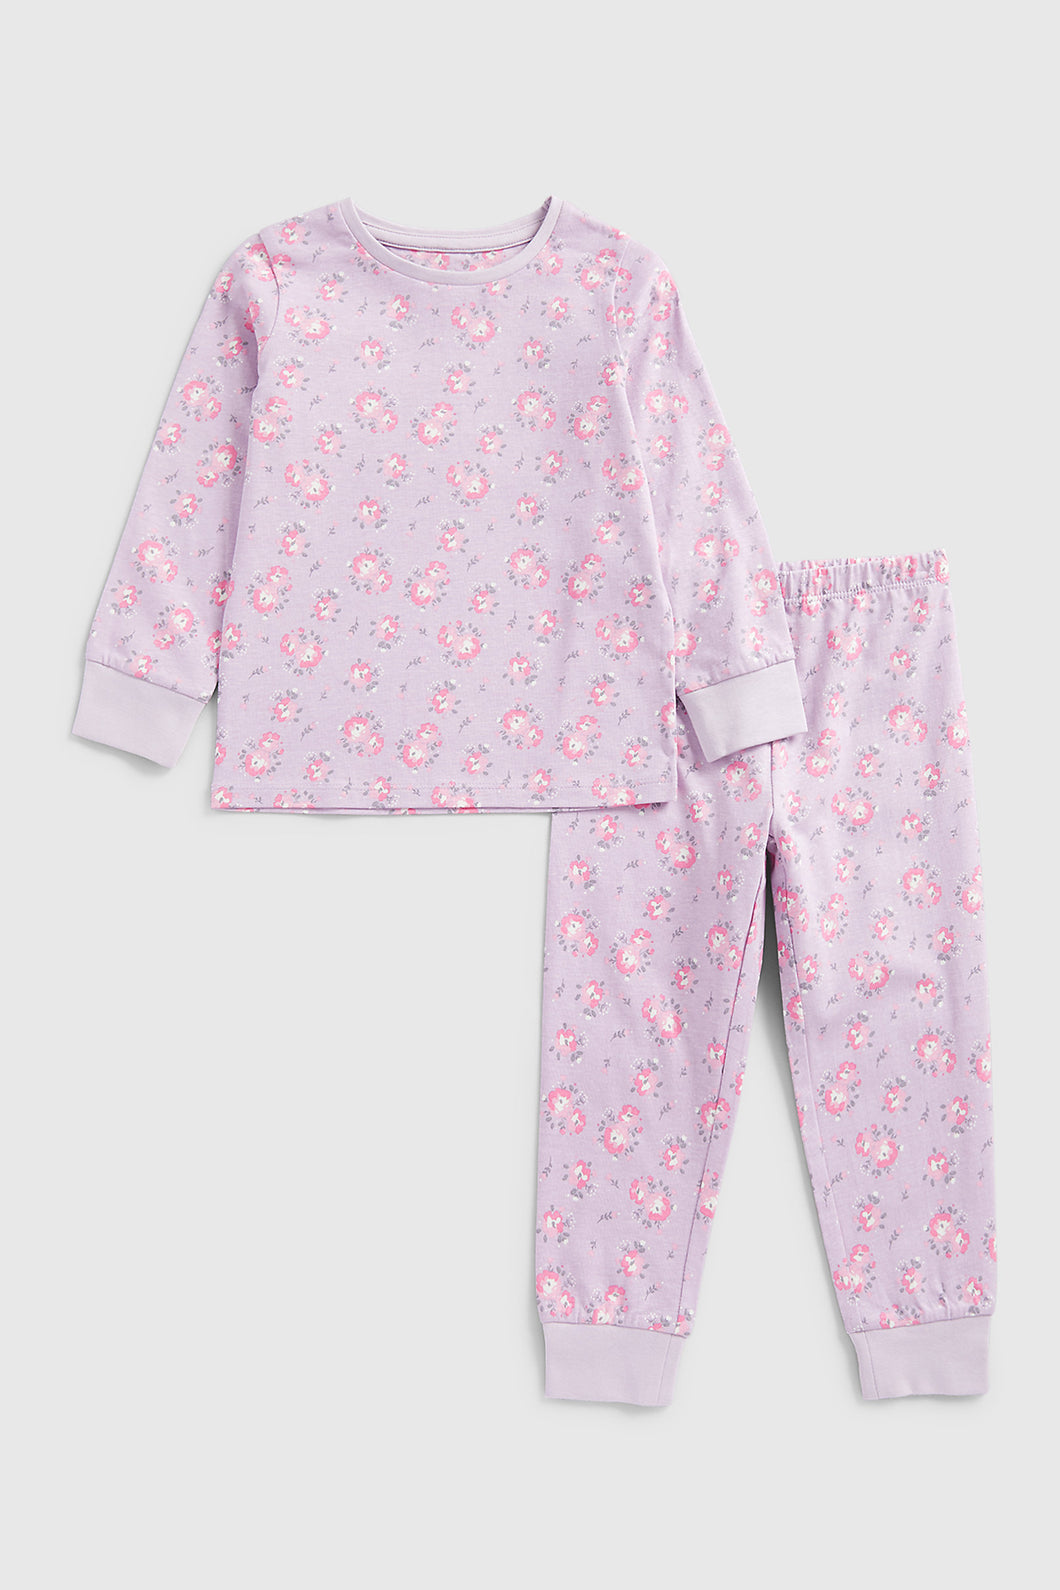 Mothercare Lilac Floral Pyjamas